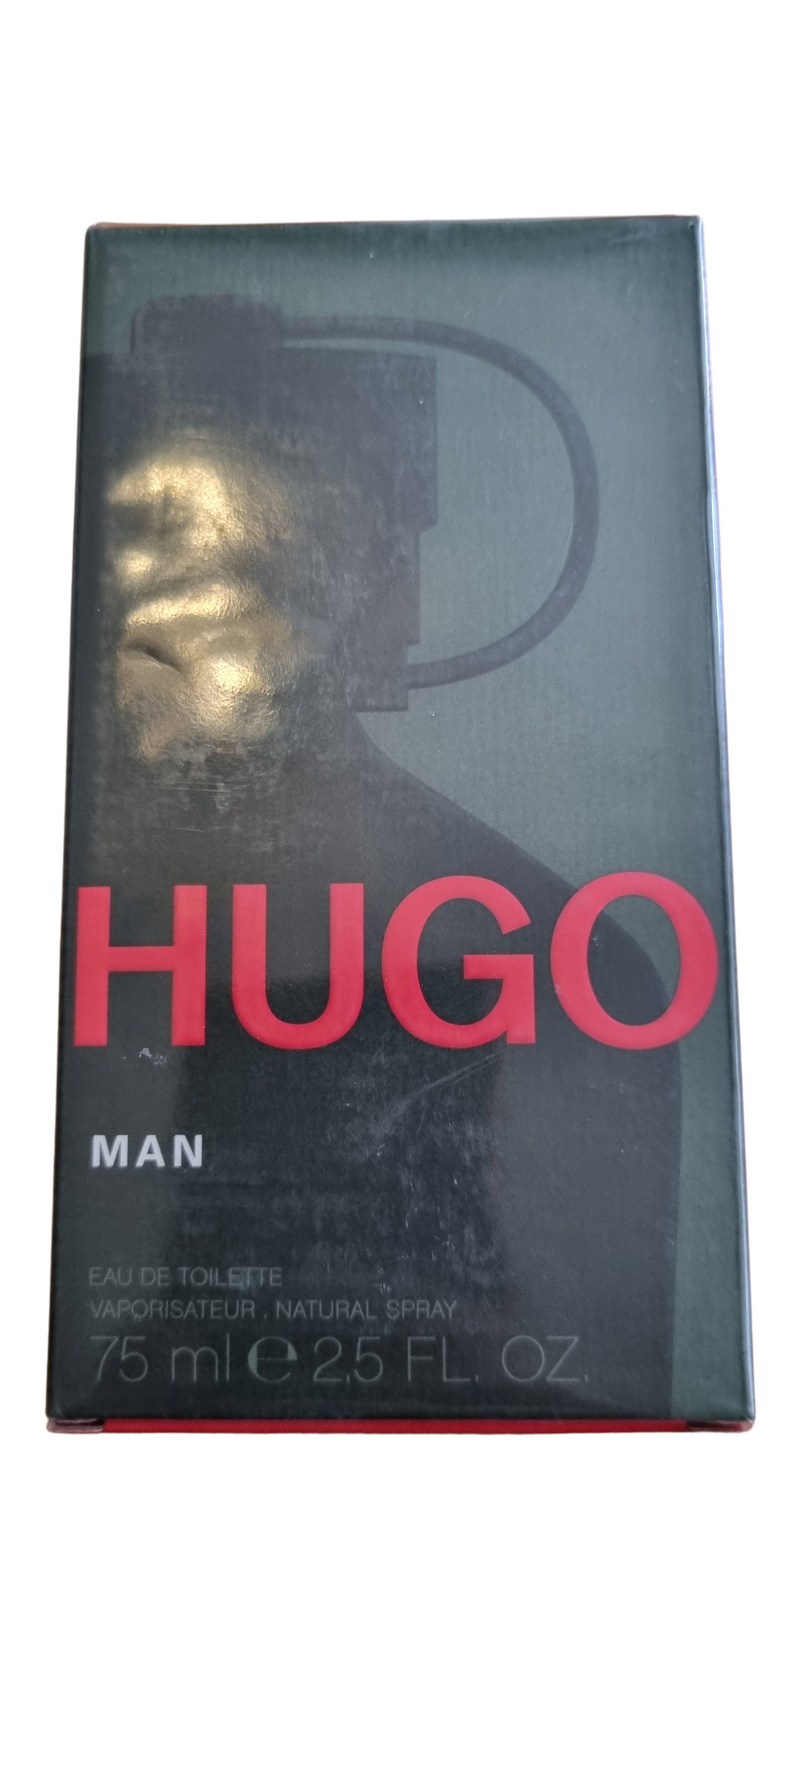 Man - Hugo boss - Eau de toilette - 75/75ml